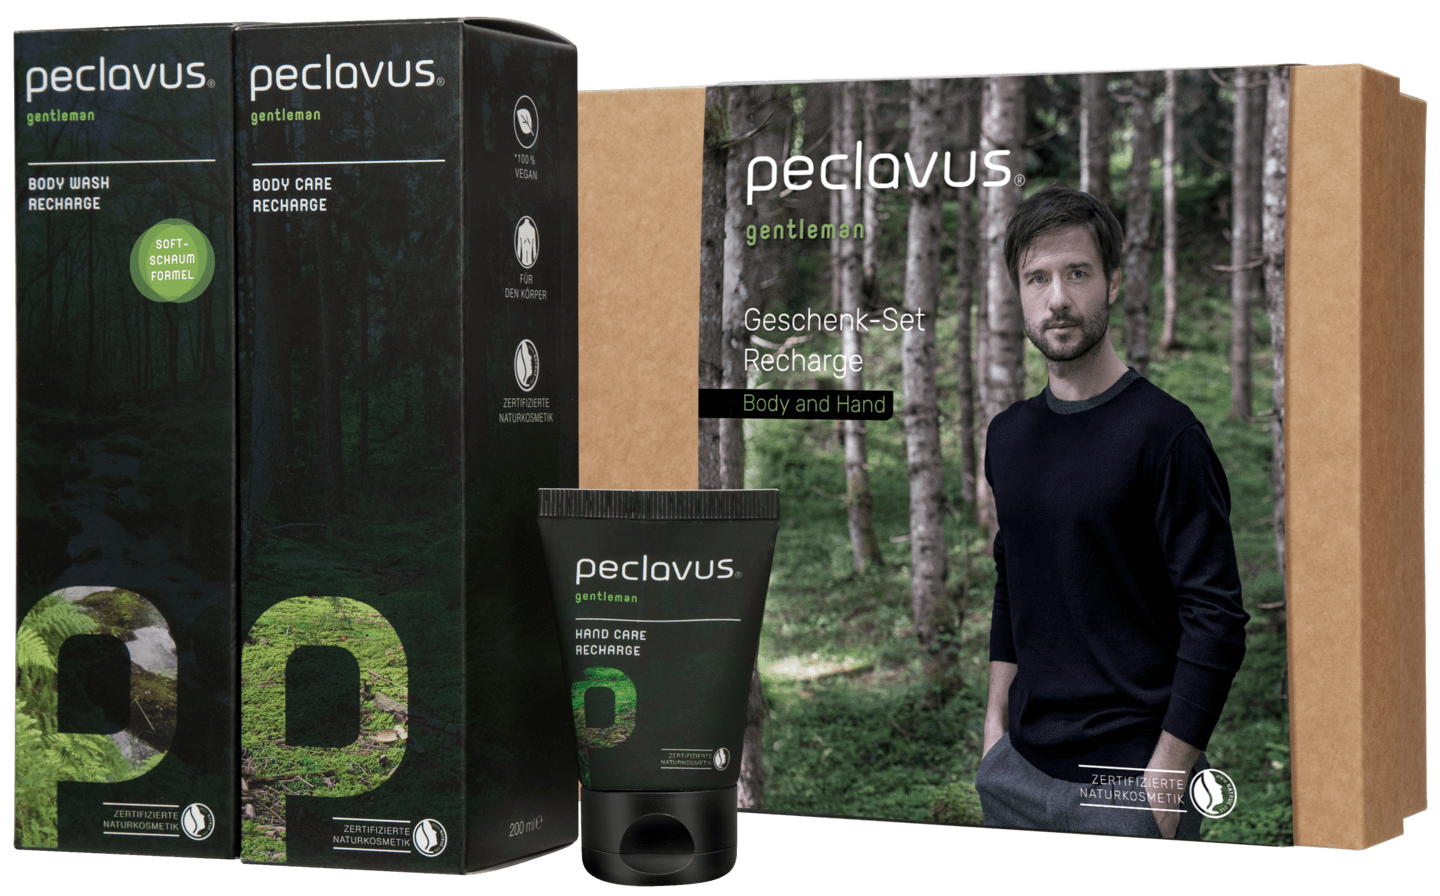 peclavus - Geschenk-Set Recharge Body and Hand